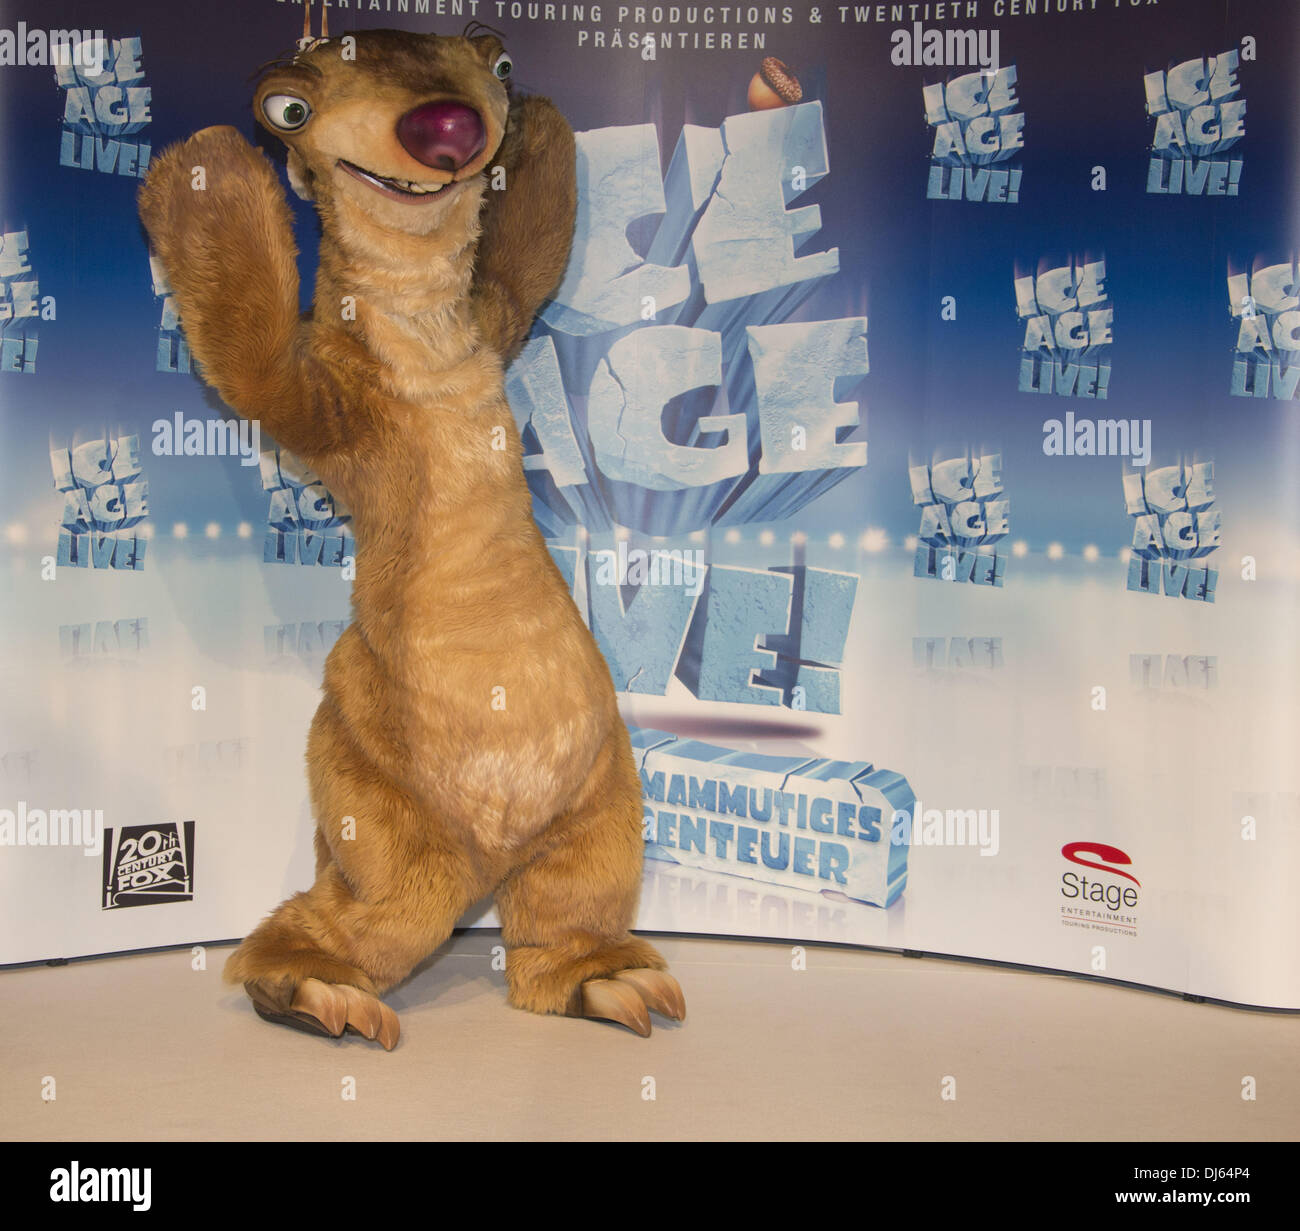 Sid alla conferenza stampa per il SID del primo spettacolo 'Ice Age Live! Ein Abenteuer Mammutiges' al teatro Kehrwieder. Amburgo, Germania - 05.09.2012 Foto Stock